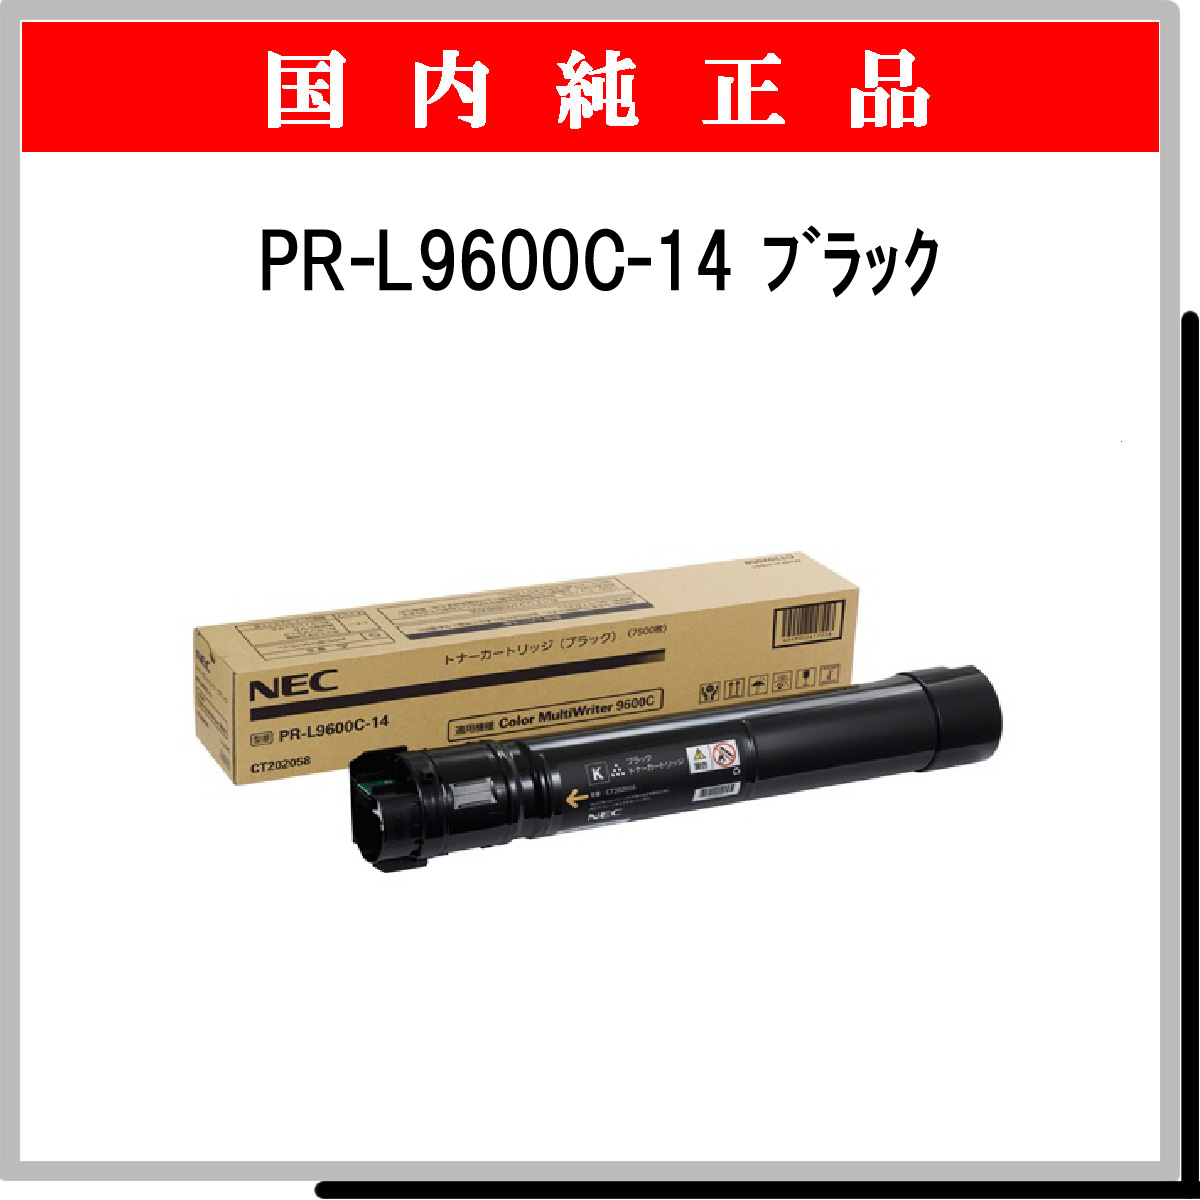 PR-L9600C-14 純正